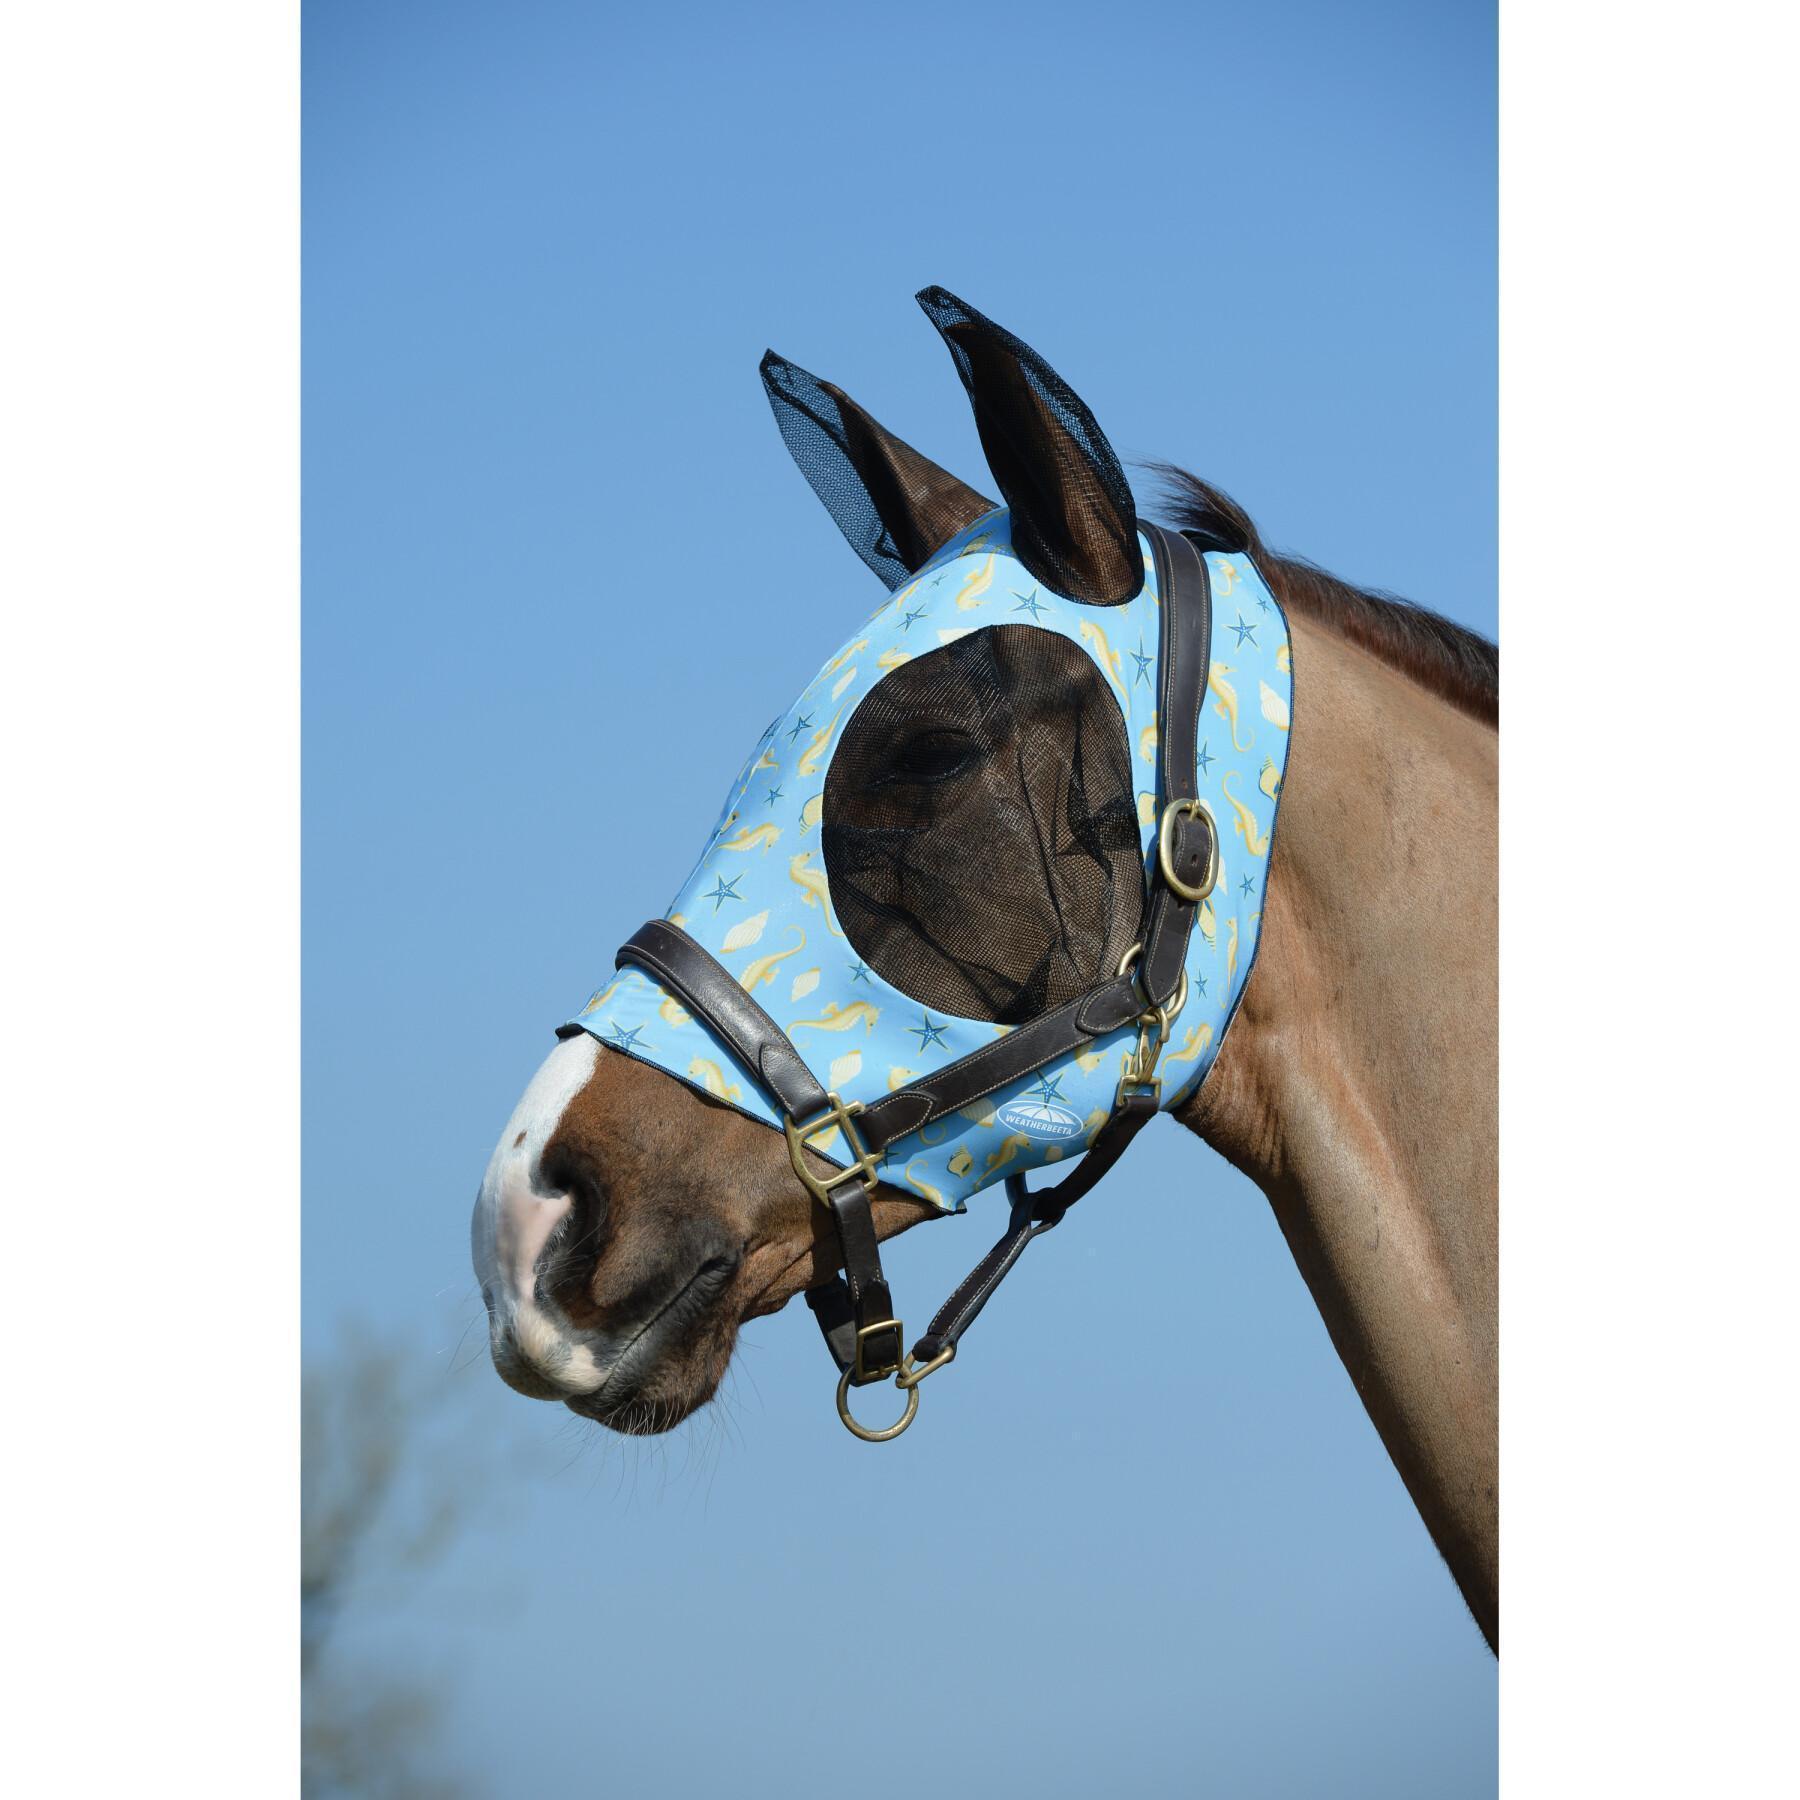 Maschera antimosche elastica per gli occhi e le orecchie del cavallo Weatherbeeta Deluxe